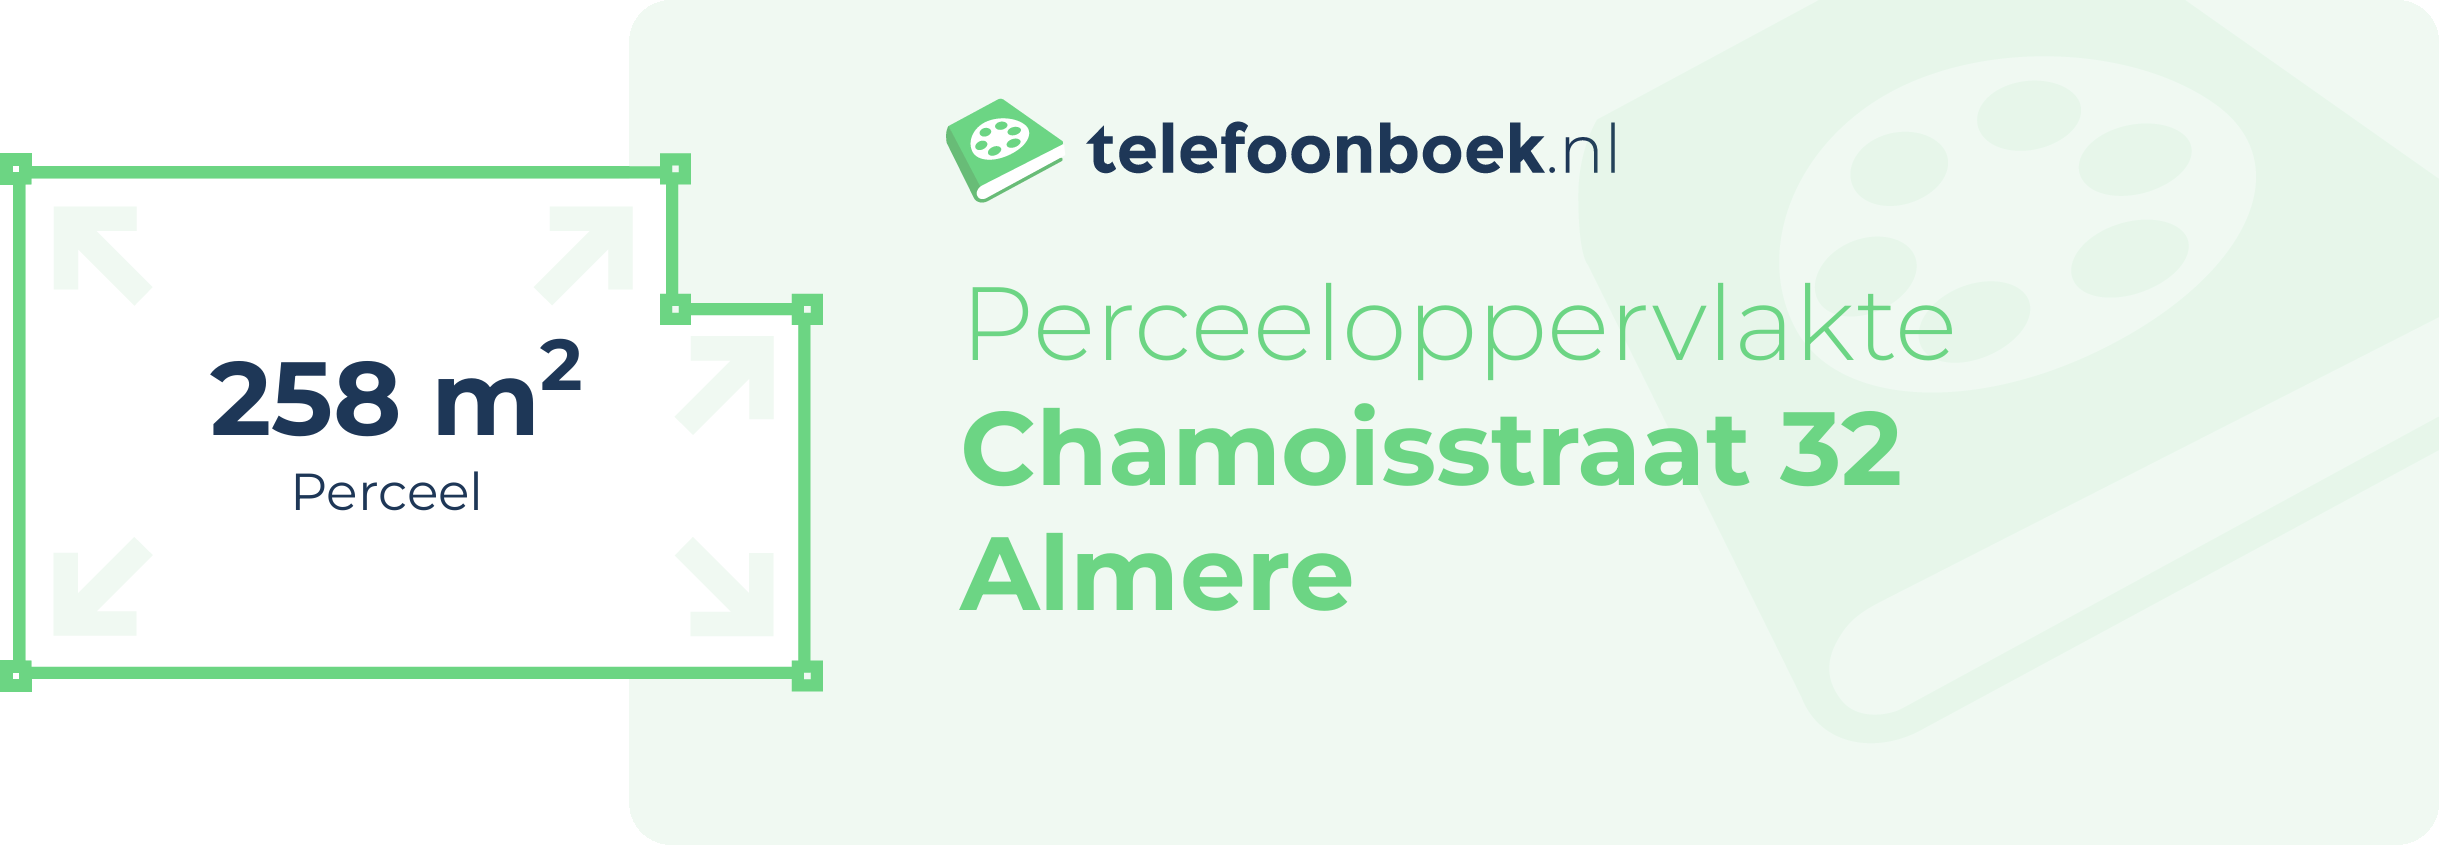 Perceeloppervlakte Chamoisstraat 32 Almere